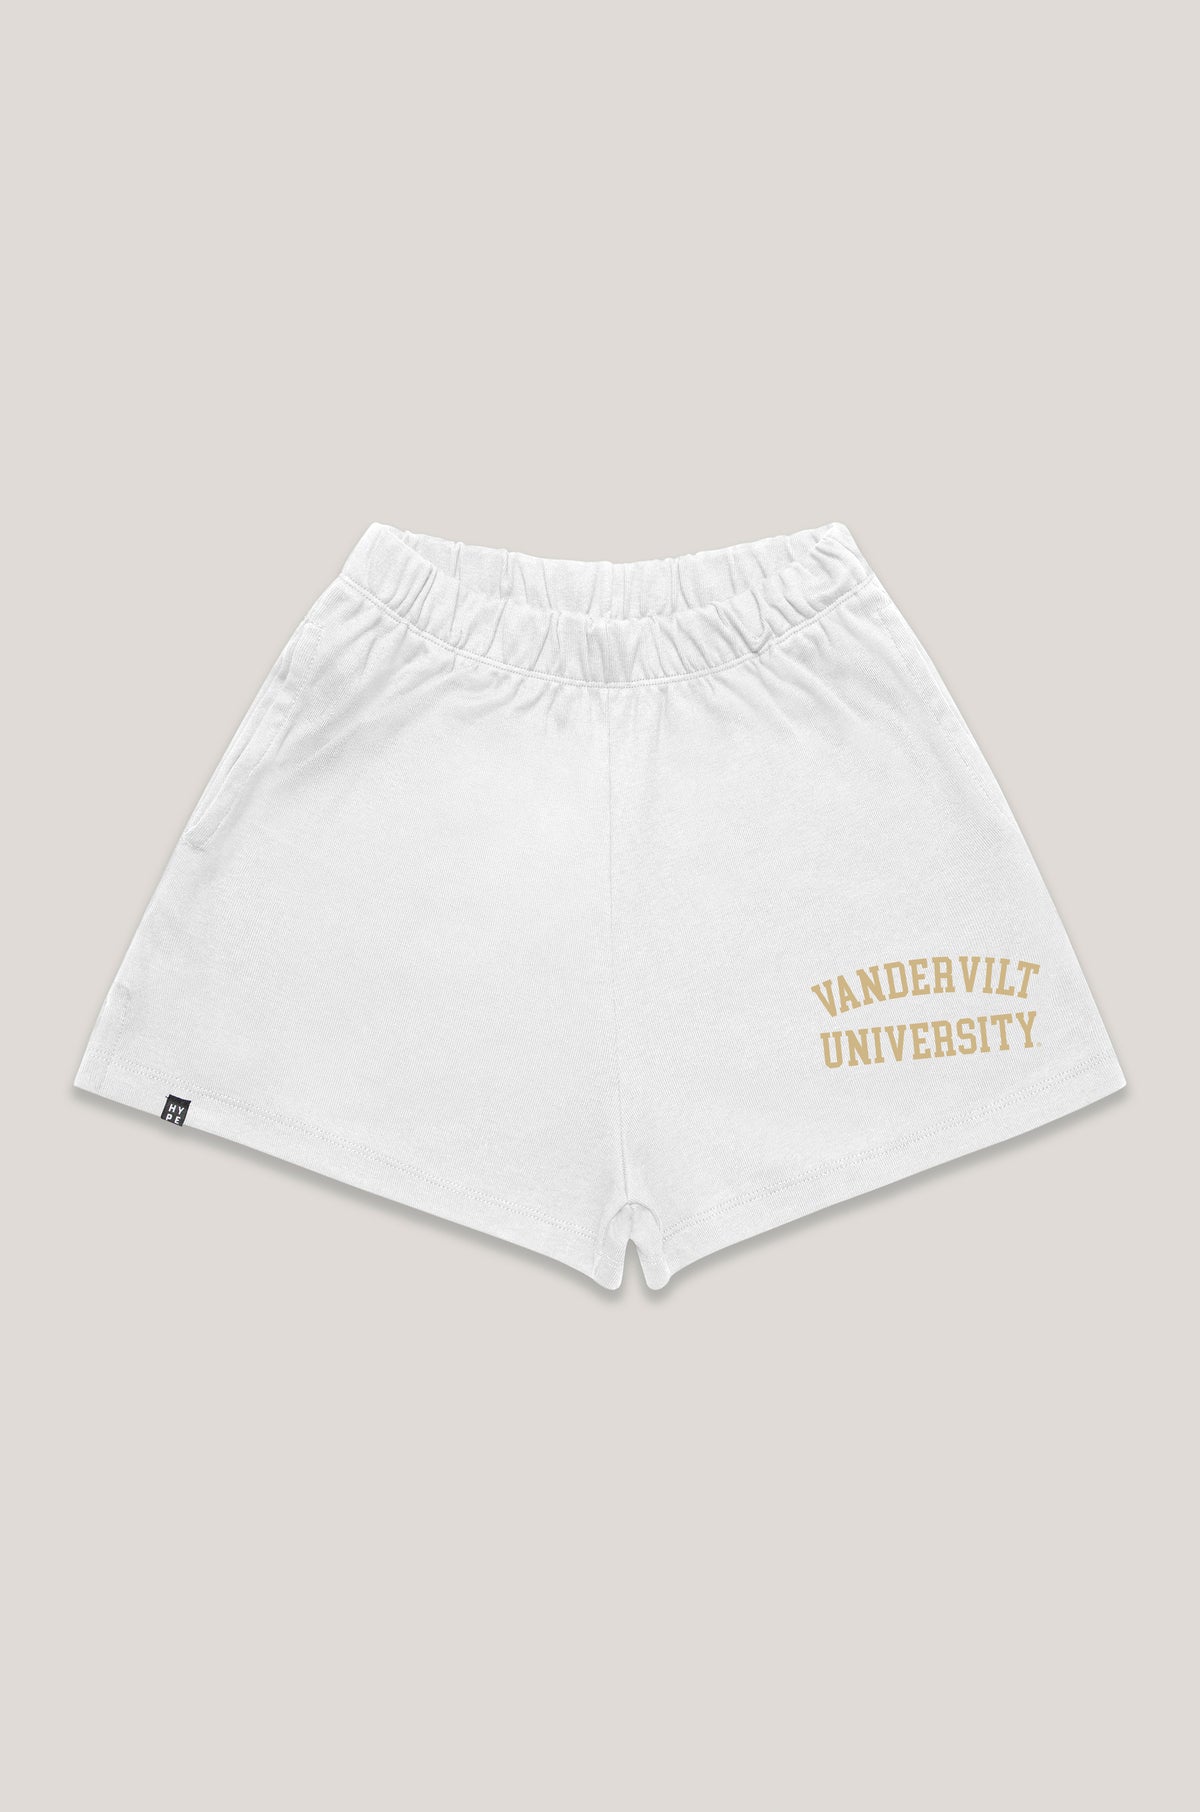 Vanderbilt Track Shorts